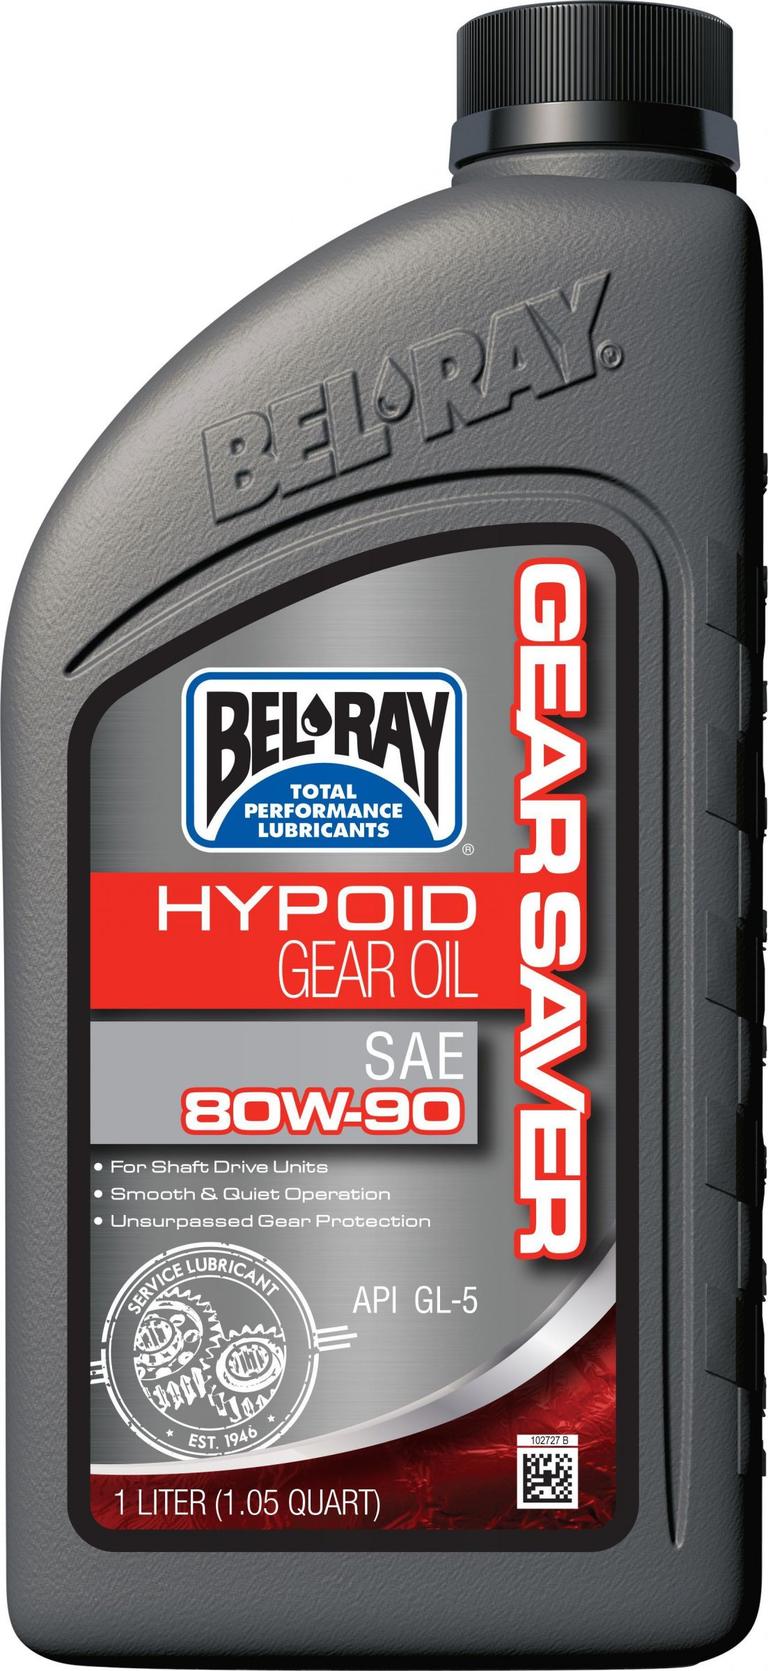 2X3R-BELRAY-99230-B1LW Hypoid Gear Oil - 80W-90 - 1L